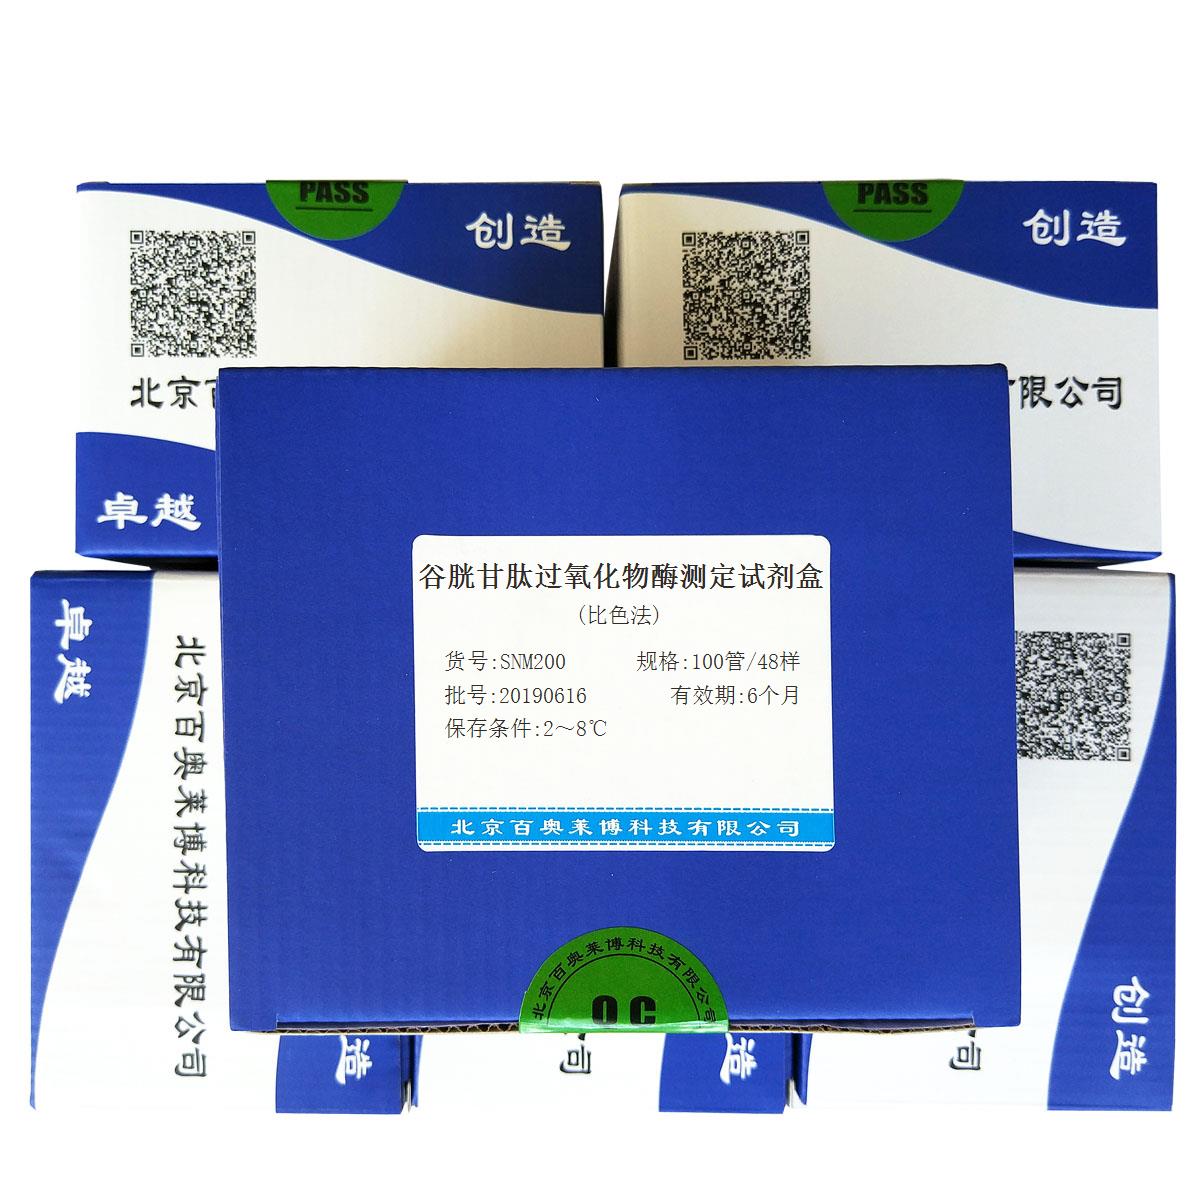 谷胱甘肽过氧化物酶测定试剂盒(比色法)北京价格